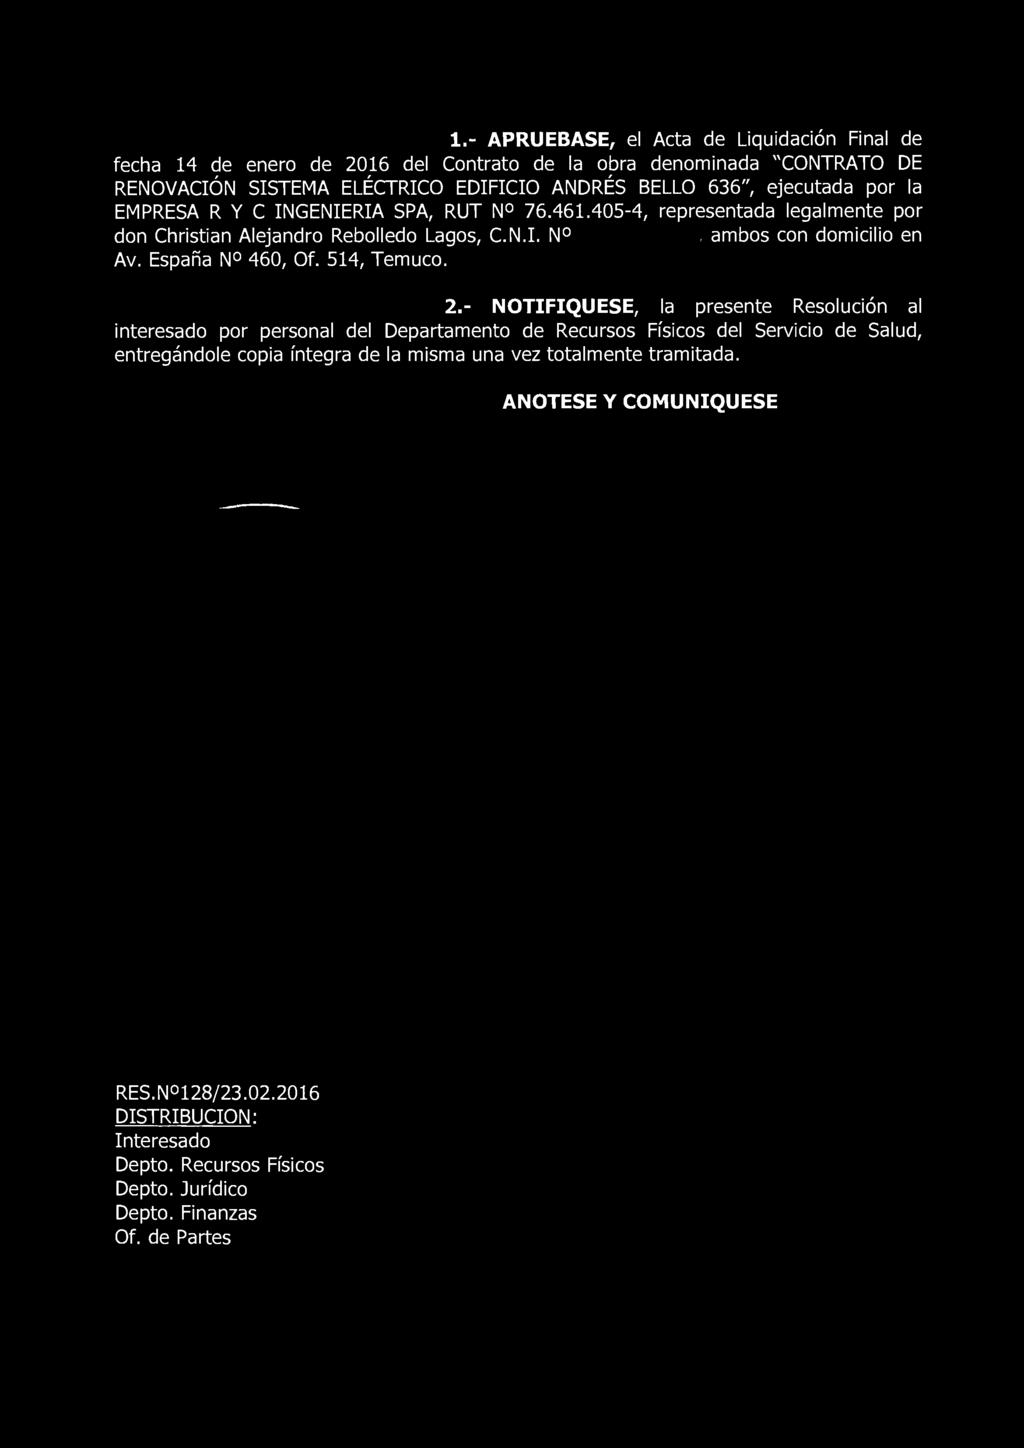 1.- APRUEBASE, el Acta de Liquidación Final de fecha 14 de enero de 2016 del Contrato de la obra denominada "CONTRATO DE RENOVACIÓN SISTEMA ELÉCTRICO EDIFICIO ANDRÉS BELLO 636", ejecutada por la